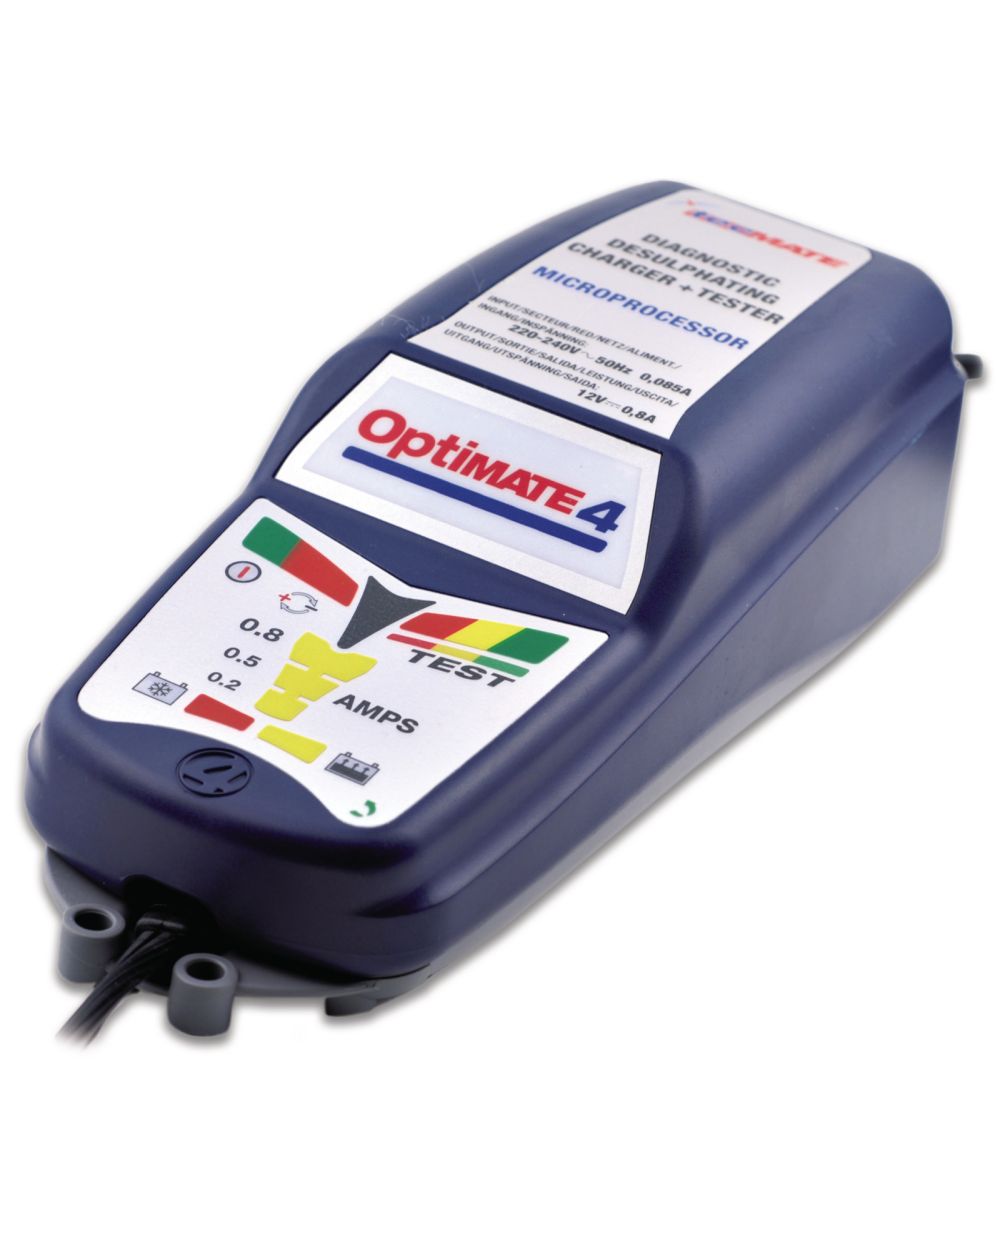 Optimate 4 Batterielade- & Diagnosegerät 12V, wasserdicht (10  Diagnose-LEDs, 2 Desulfatierungsstufen), inkl. Polklemmen + wasserdichter  Fahrzeugadapter